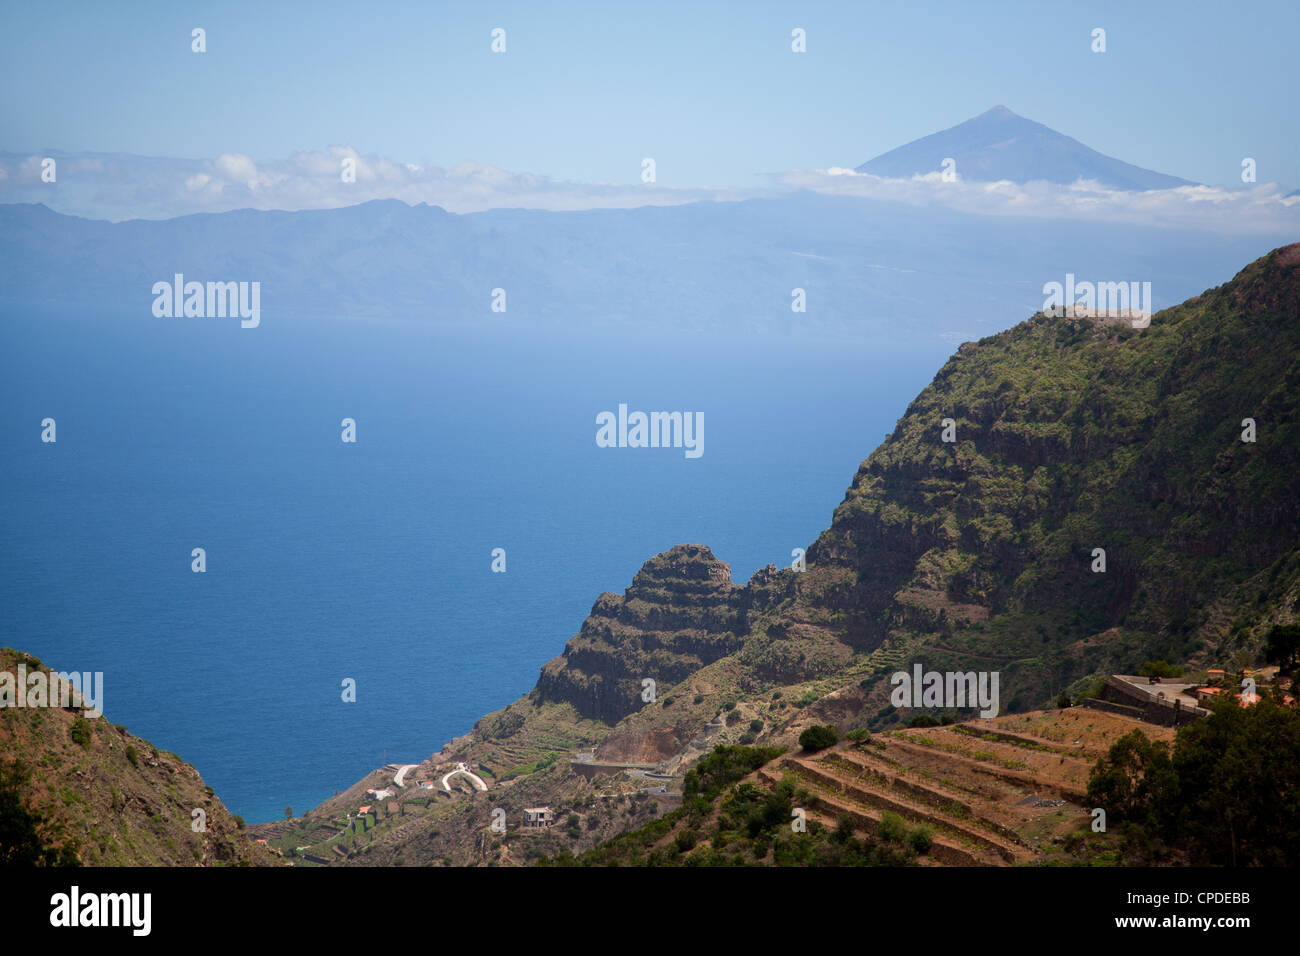 Paysage de montagne, la Gomera, Canary Islands, Spain, Europe, Atlantique Banque D'Images